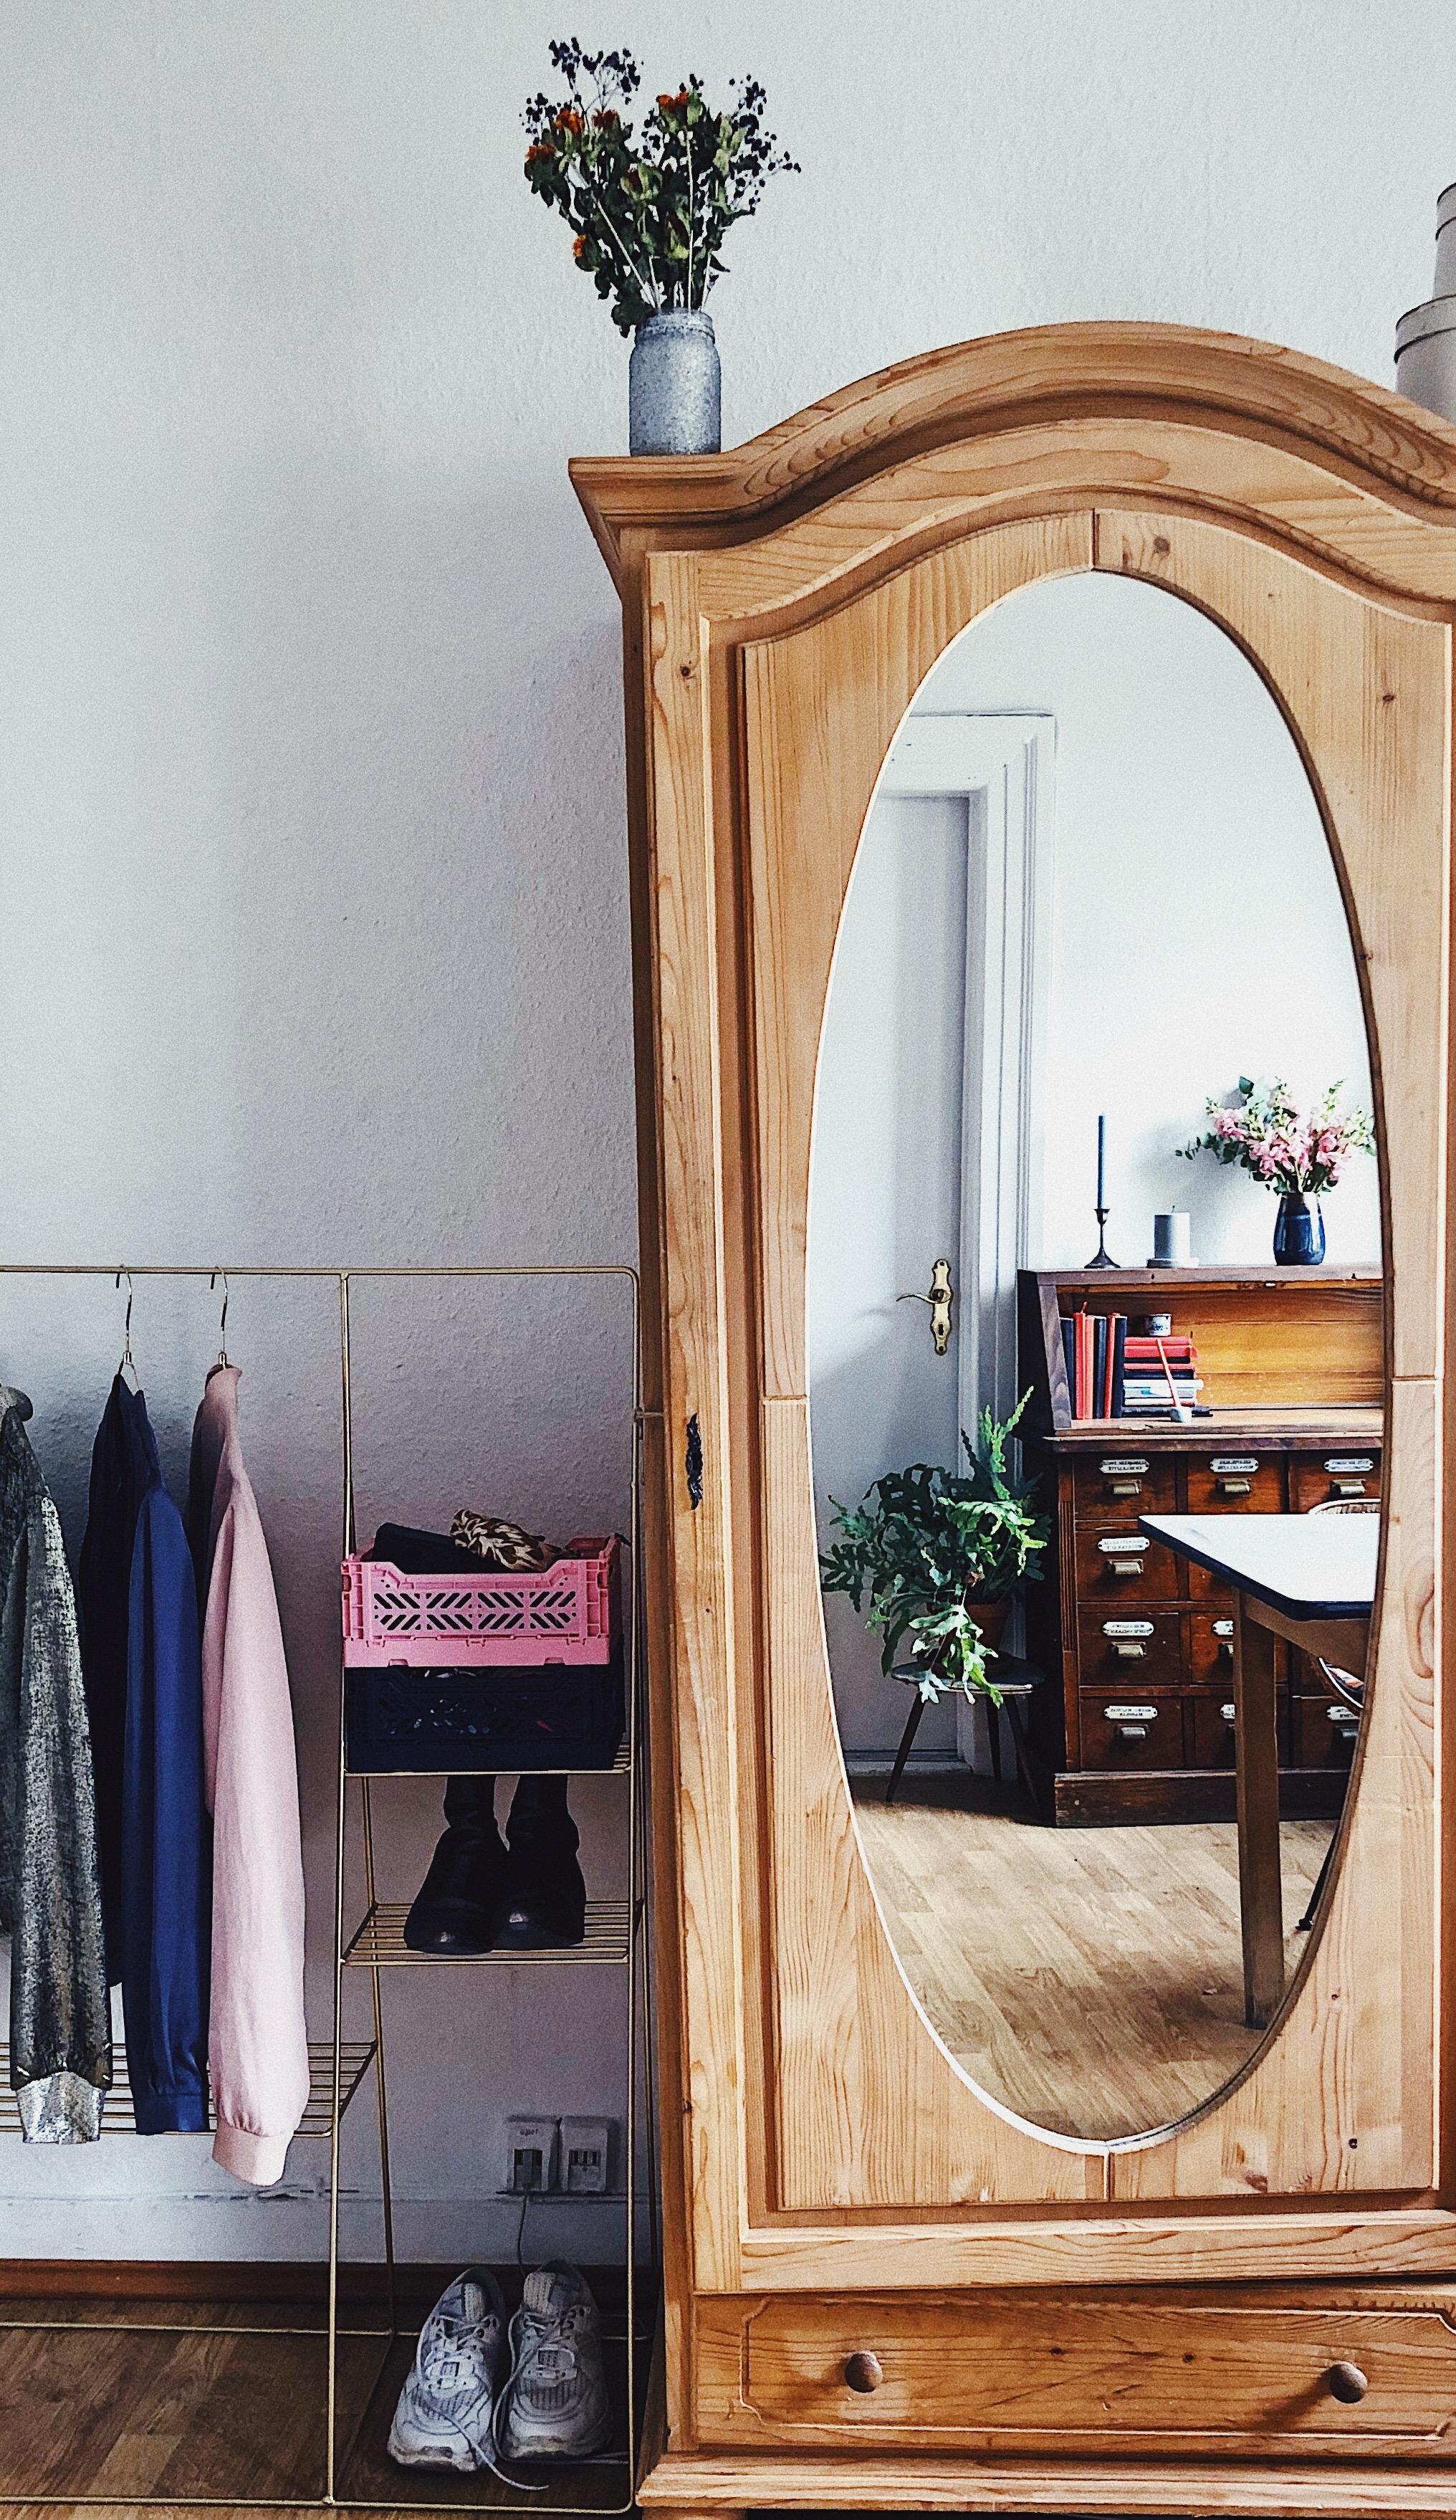 INSIGHT 
#kleiderschrank #closet #vintage #apothekerschrank #wohnzimmer #livingroom